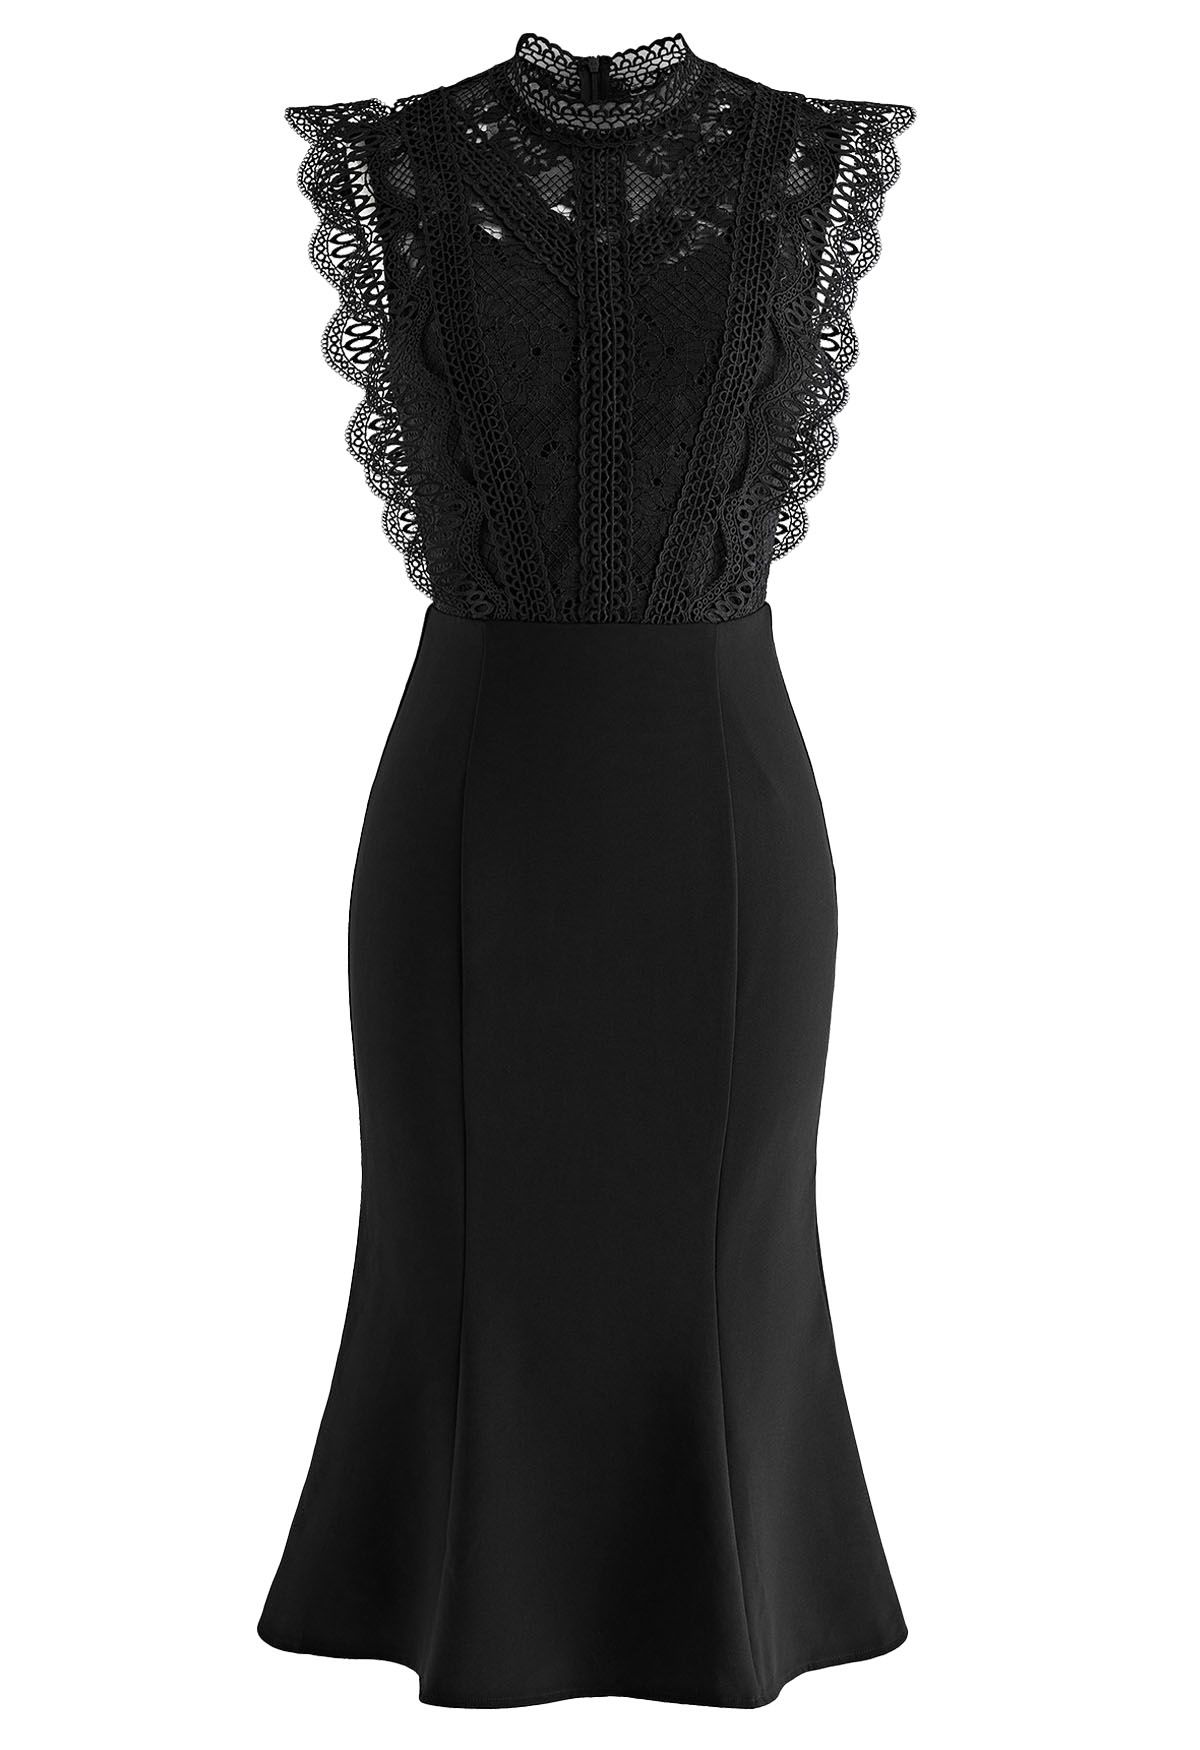 Crochet Lace Spliced Sleeveless Mermaid Dress in Black